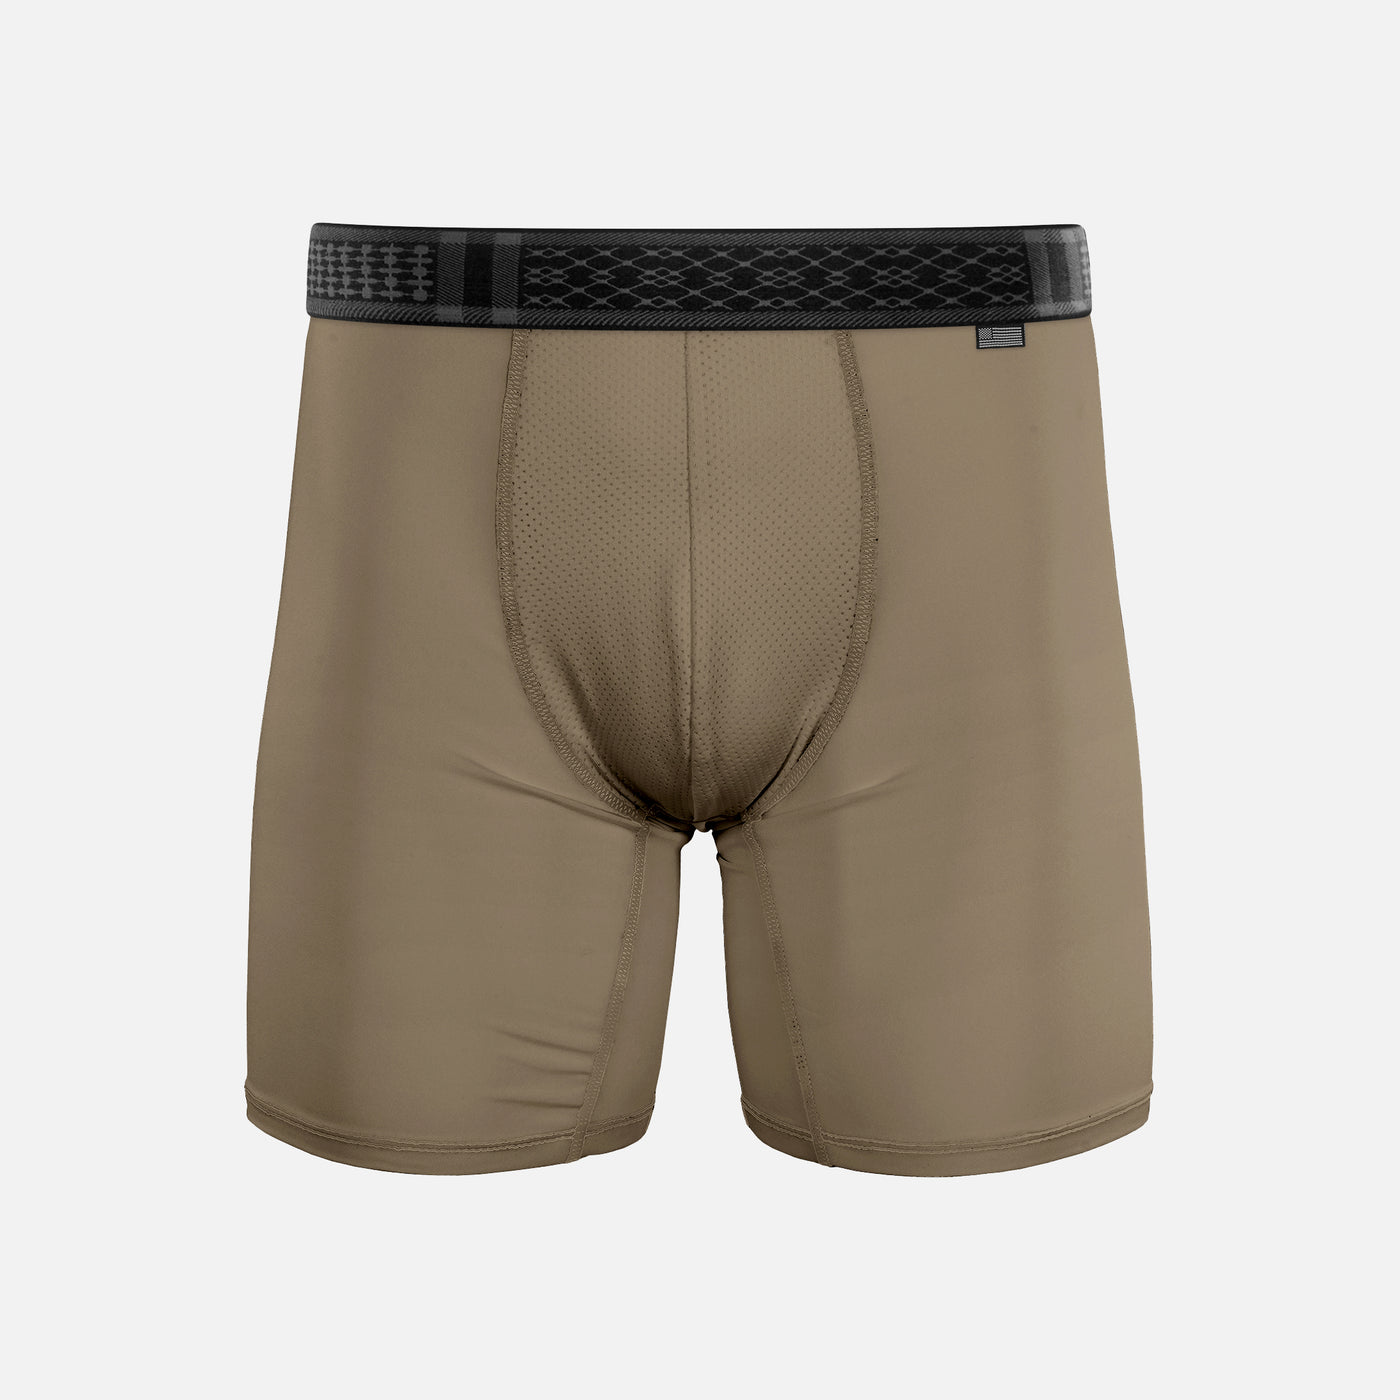 Pastel Brown Men's Underwear